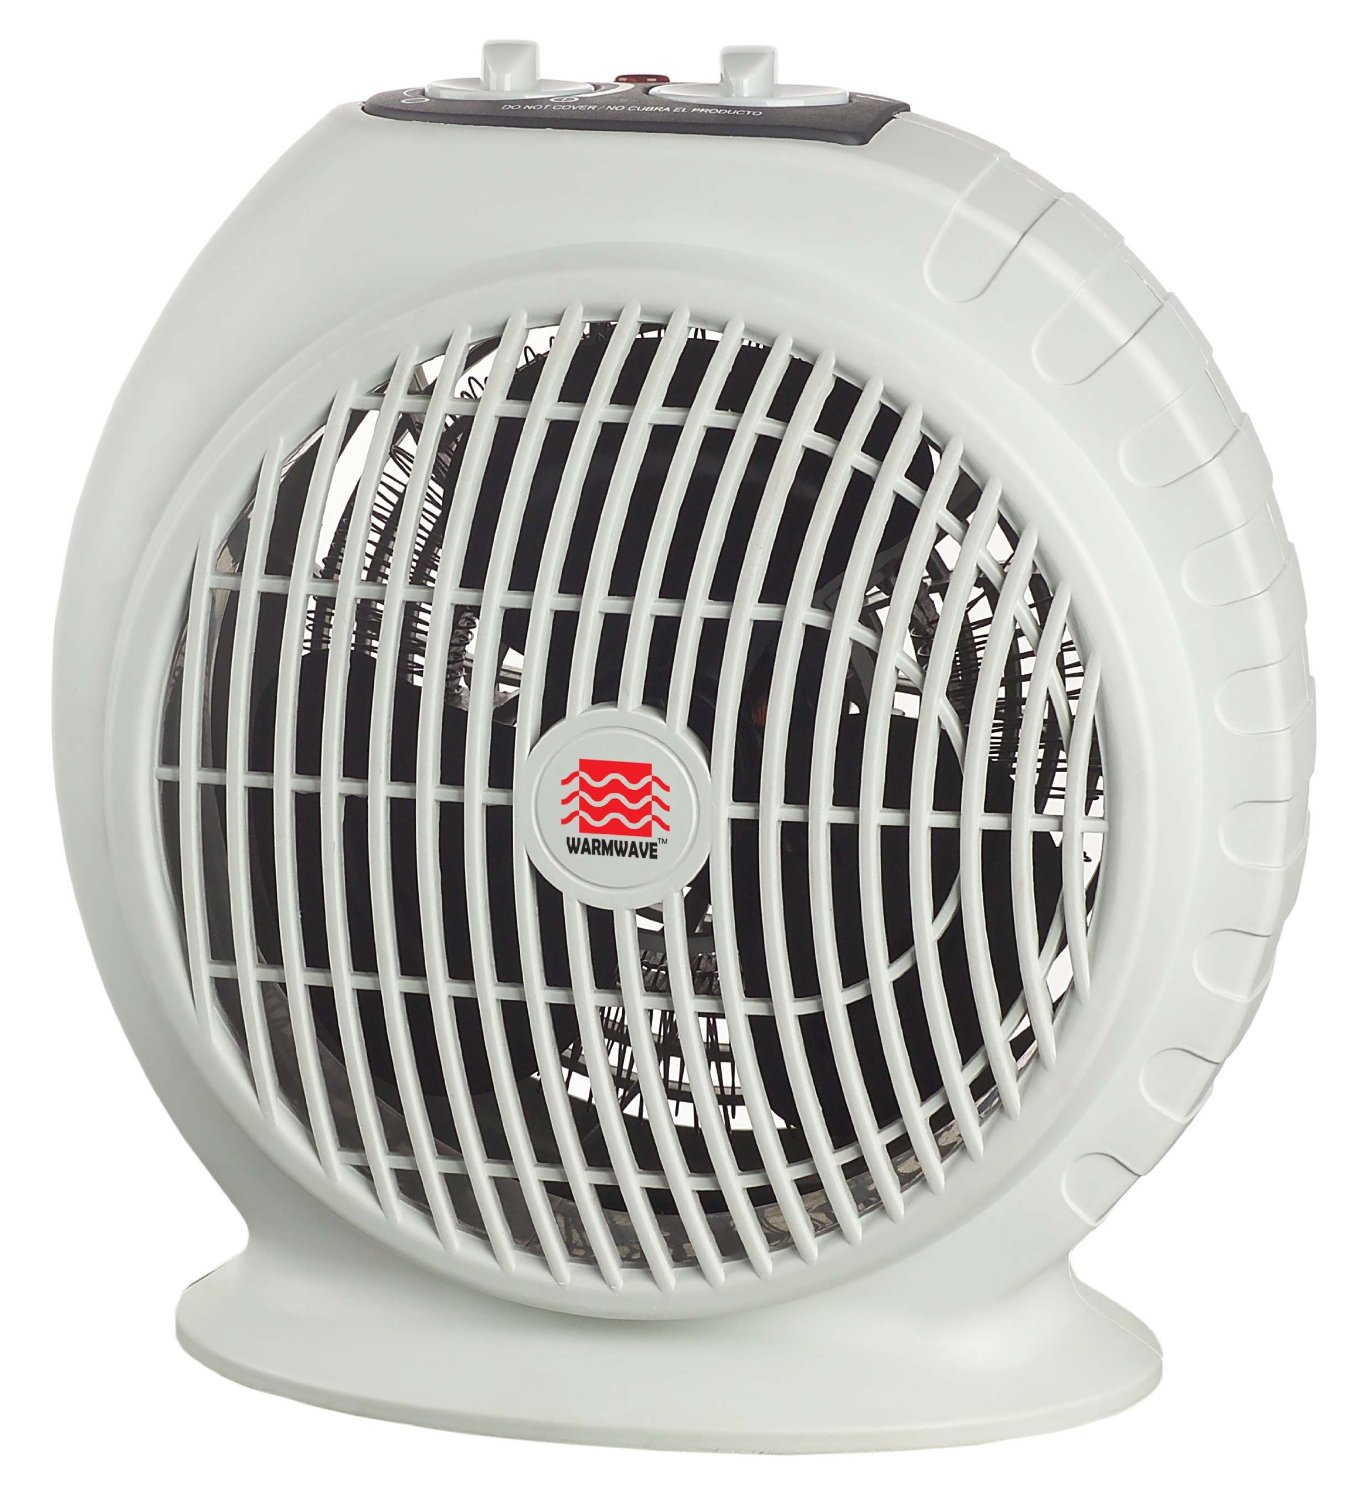 OceanAire Warmwave Electric Fan Heater – Just $12.97!